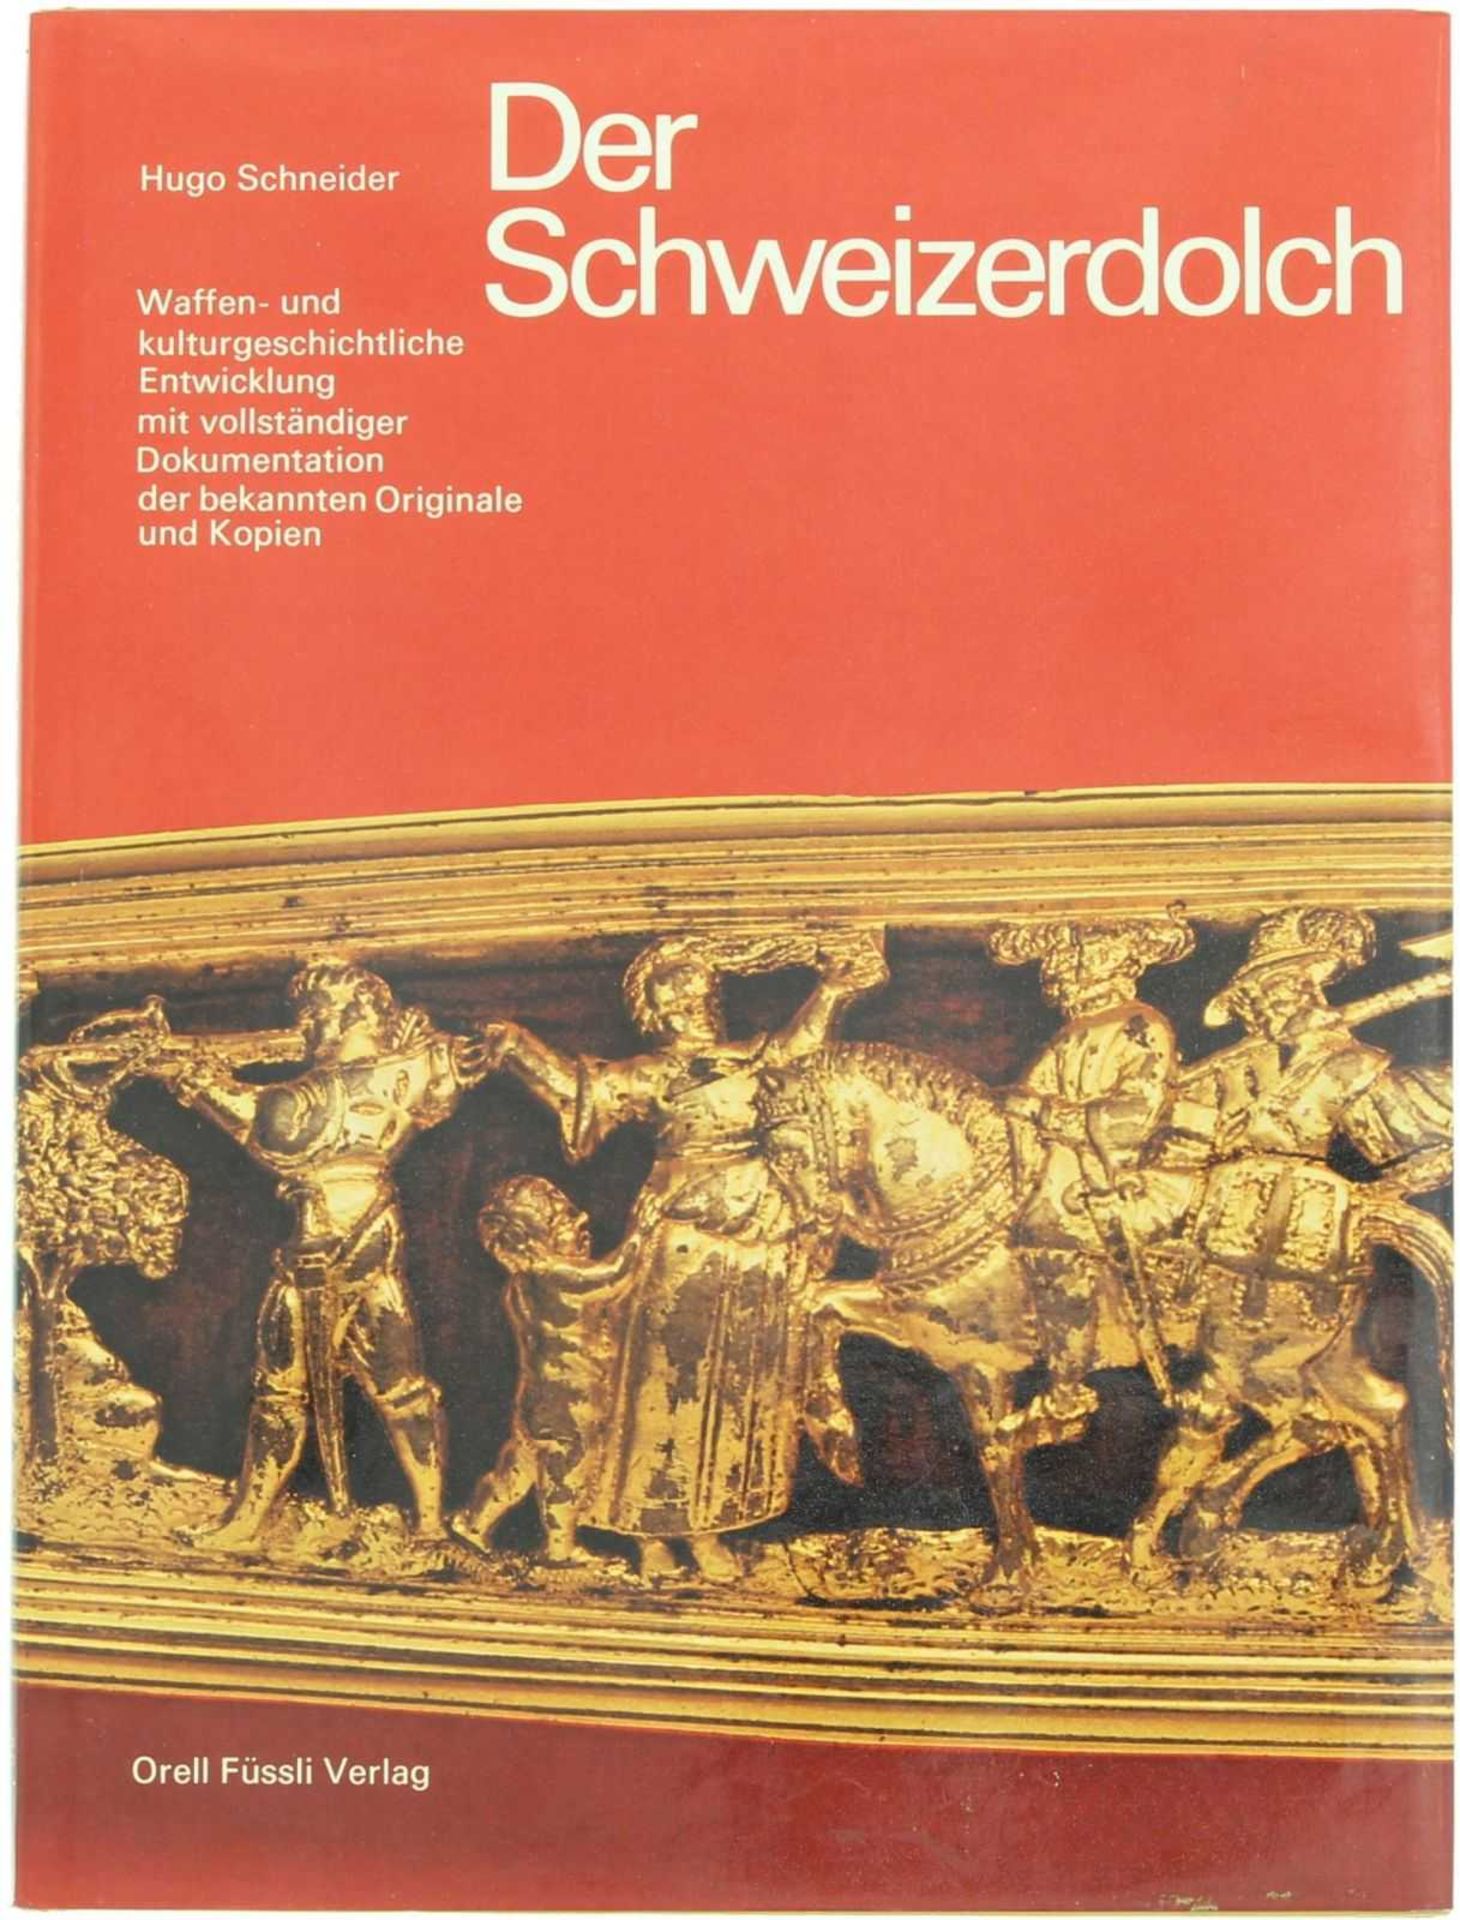 Der Schweizerdolch Autor Dr. Hugo Schneider 1977. Standardwerk über die waffen- und